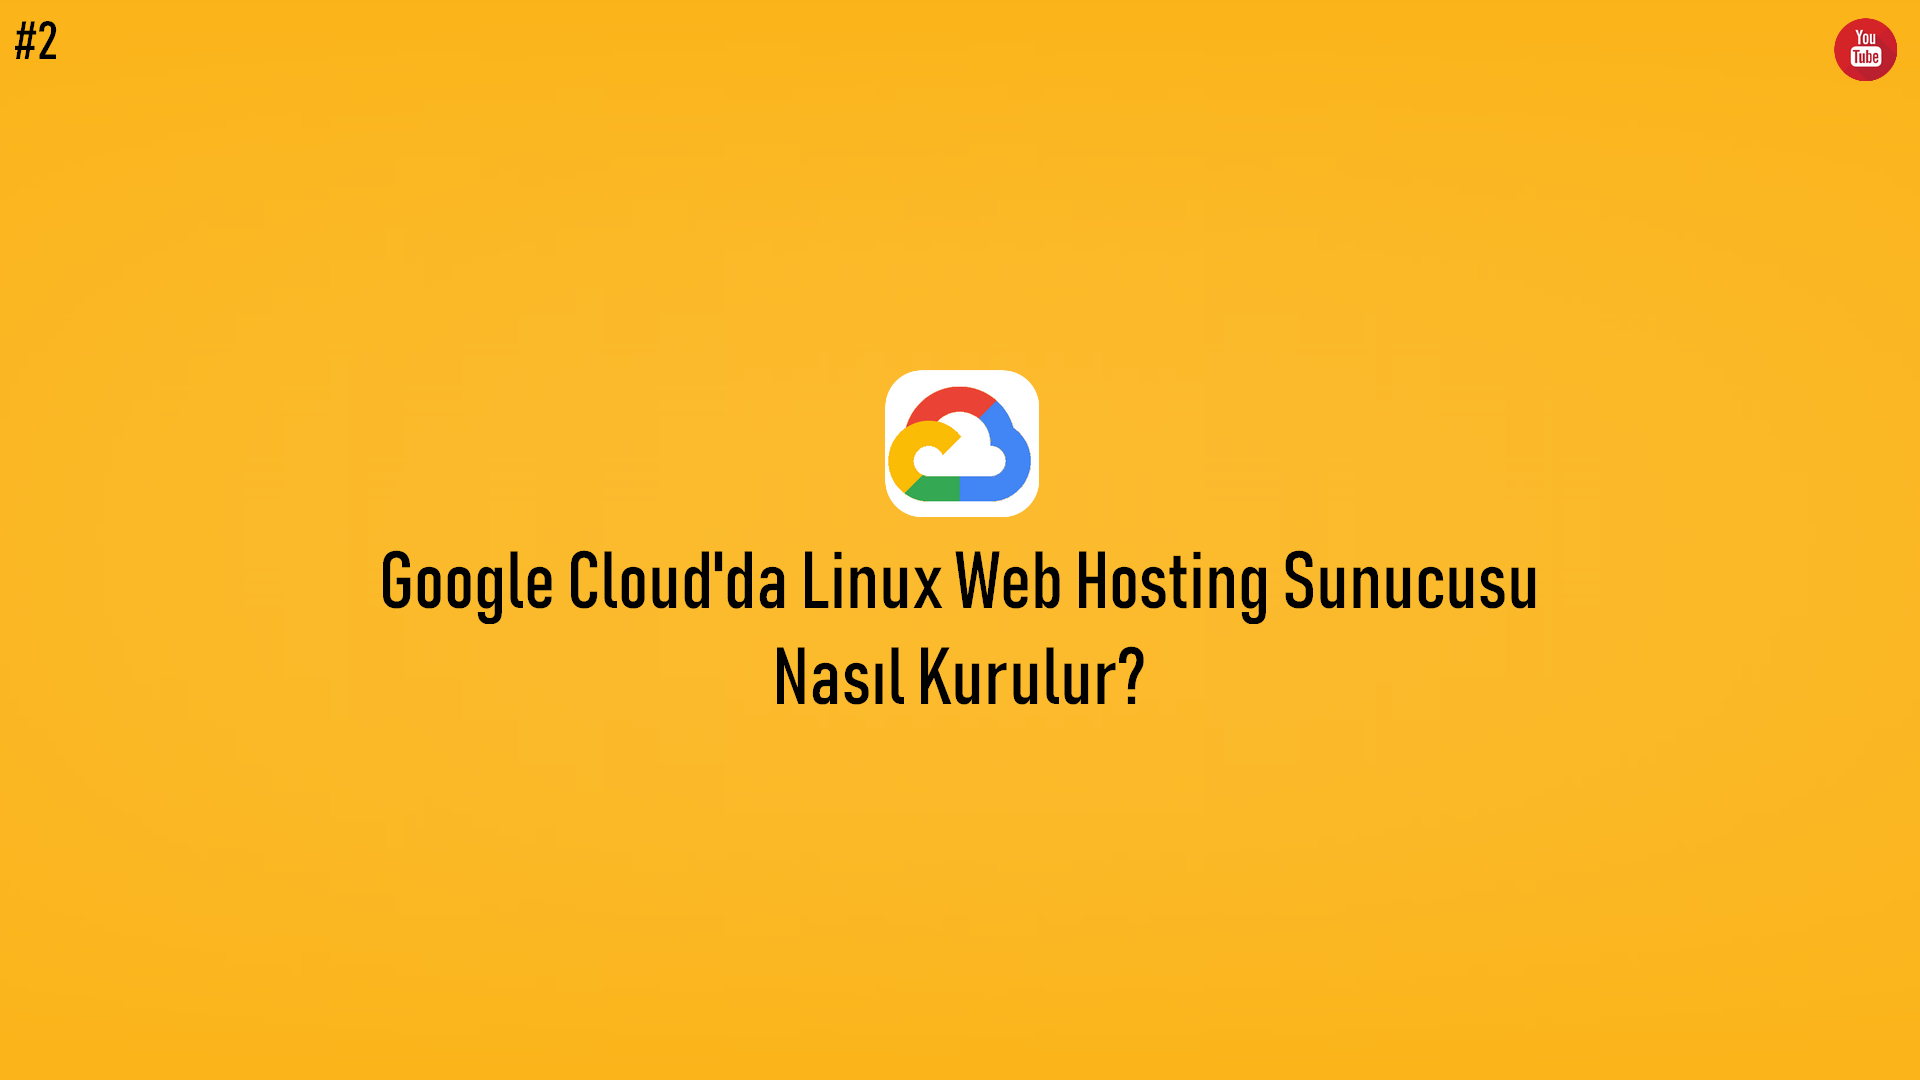 Google Cloud'da Linux Web Hosting Sunucusu Nasıl Kurulur? (Video İçerik) başlıklı içeriğin resmi